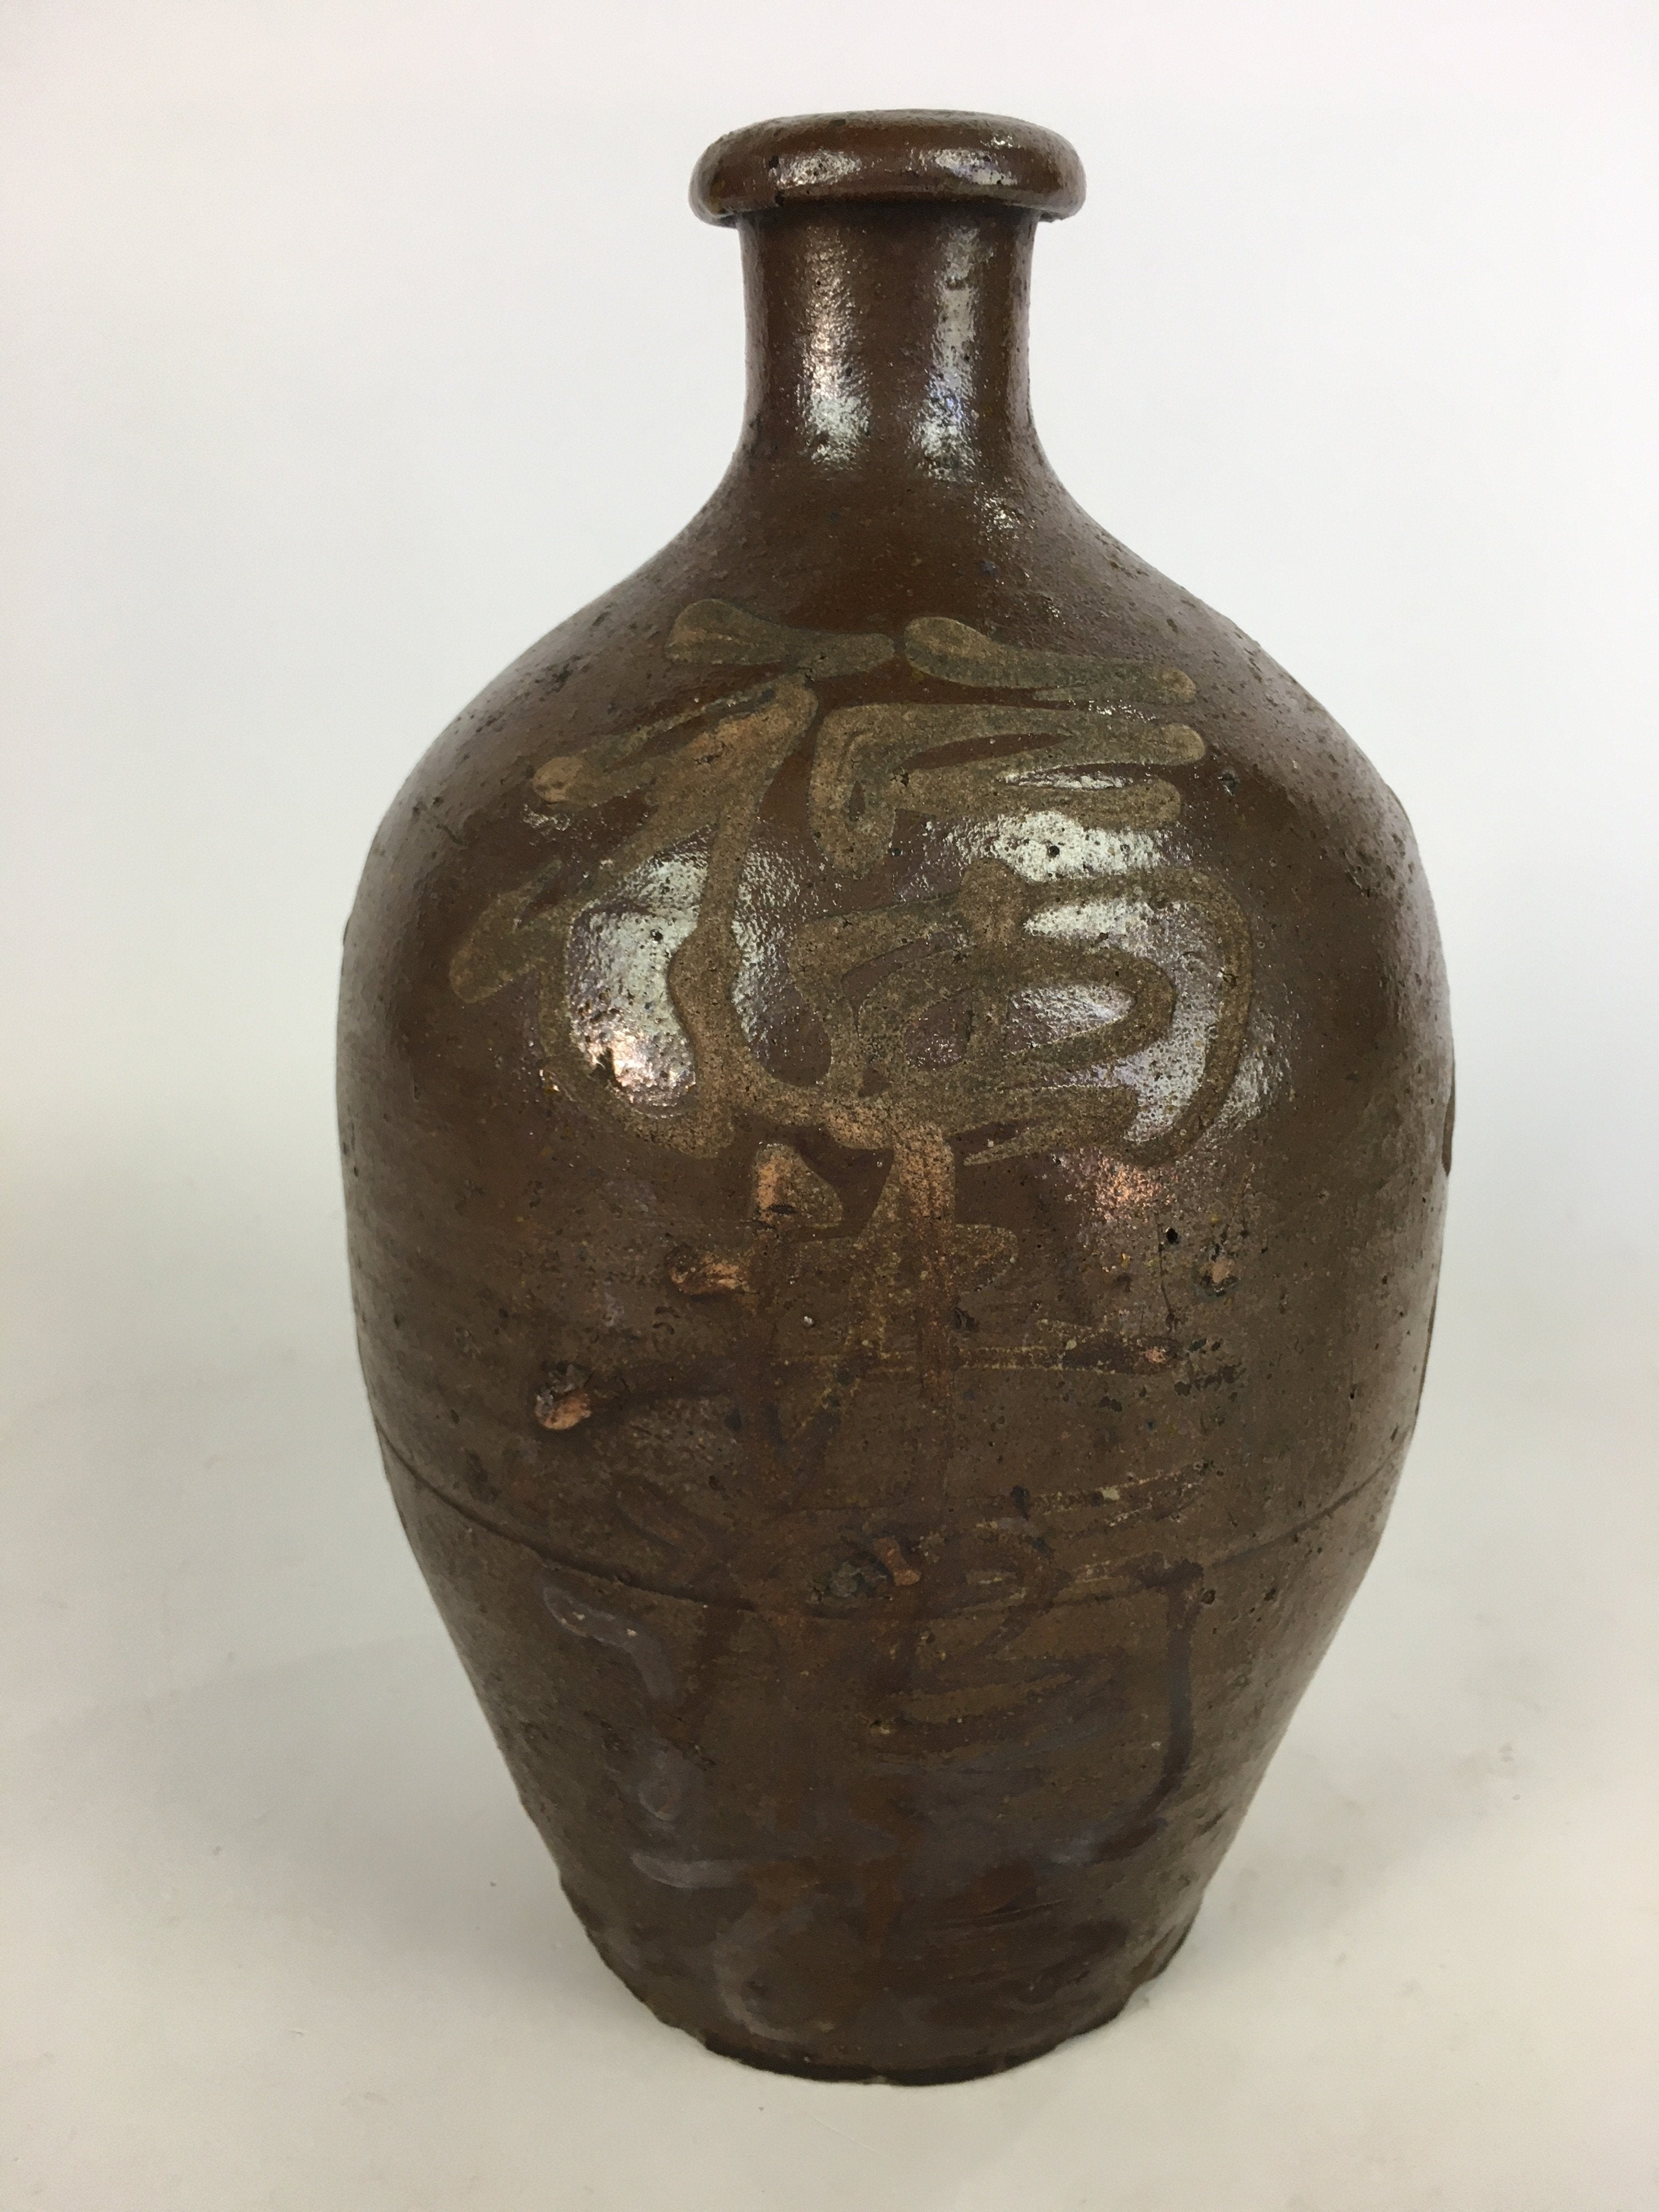 Antique Japanese Ceramic Sake Bottle Tokkuri Pottery Kayoi-Tokkuri Brown TS284